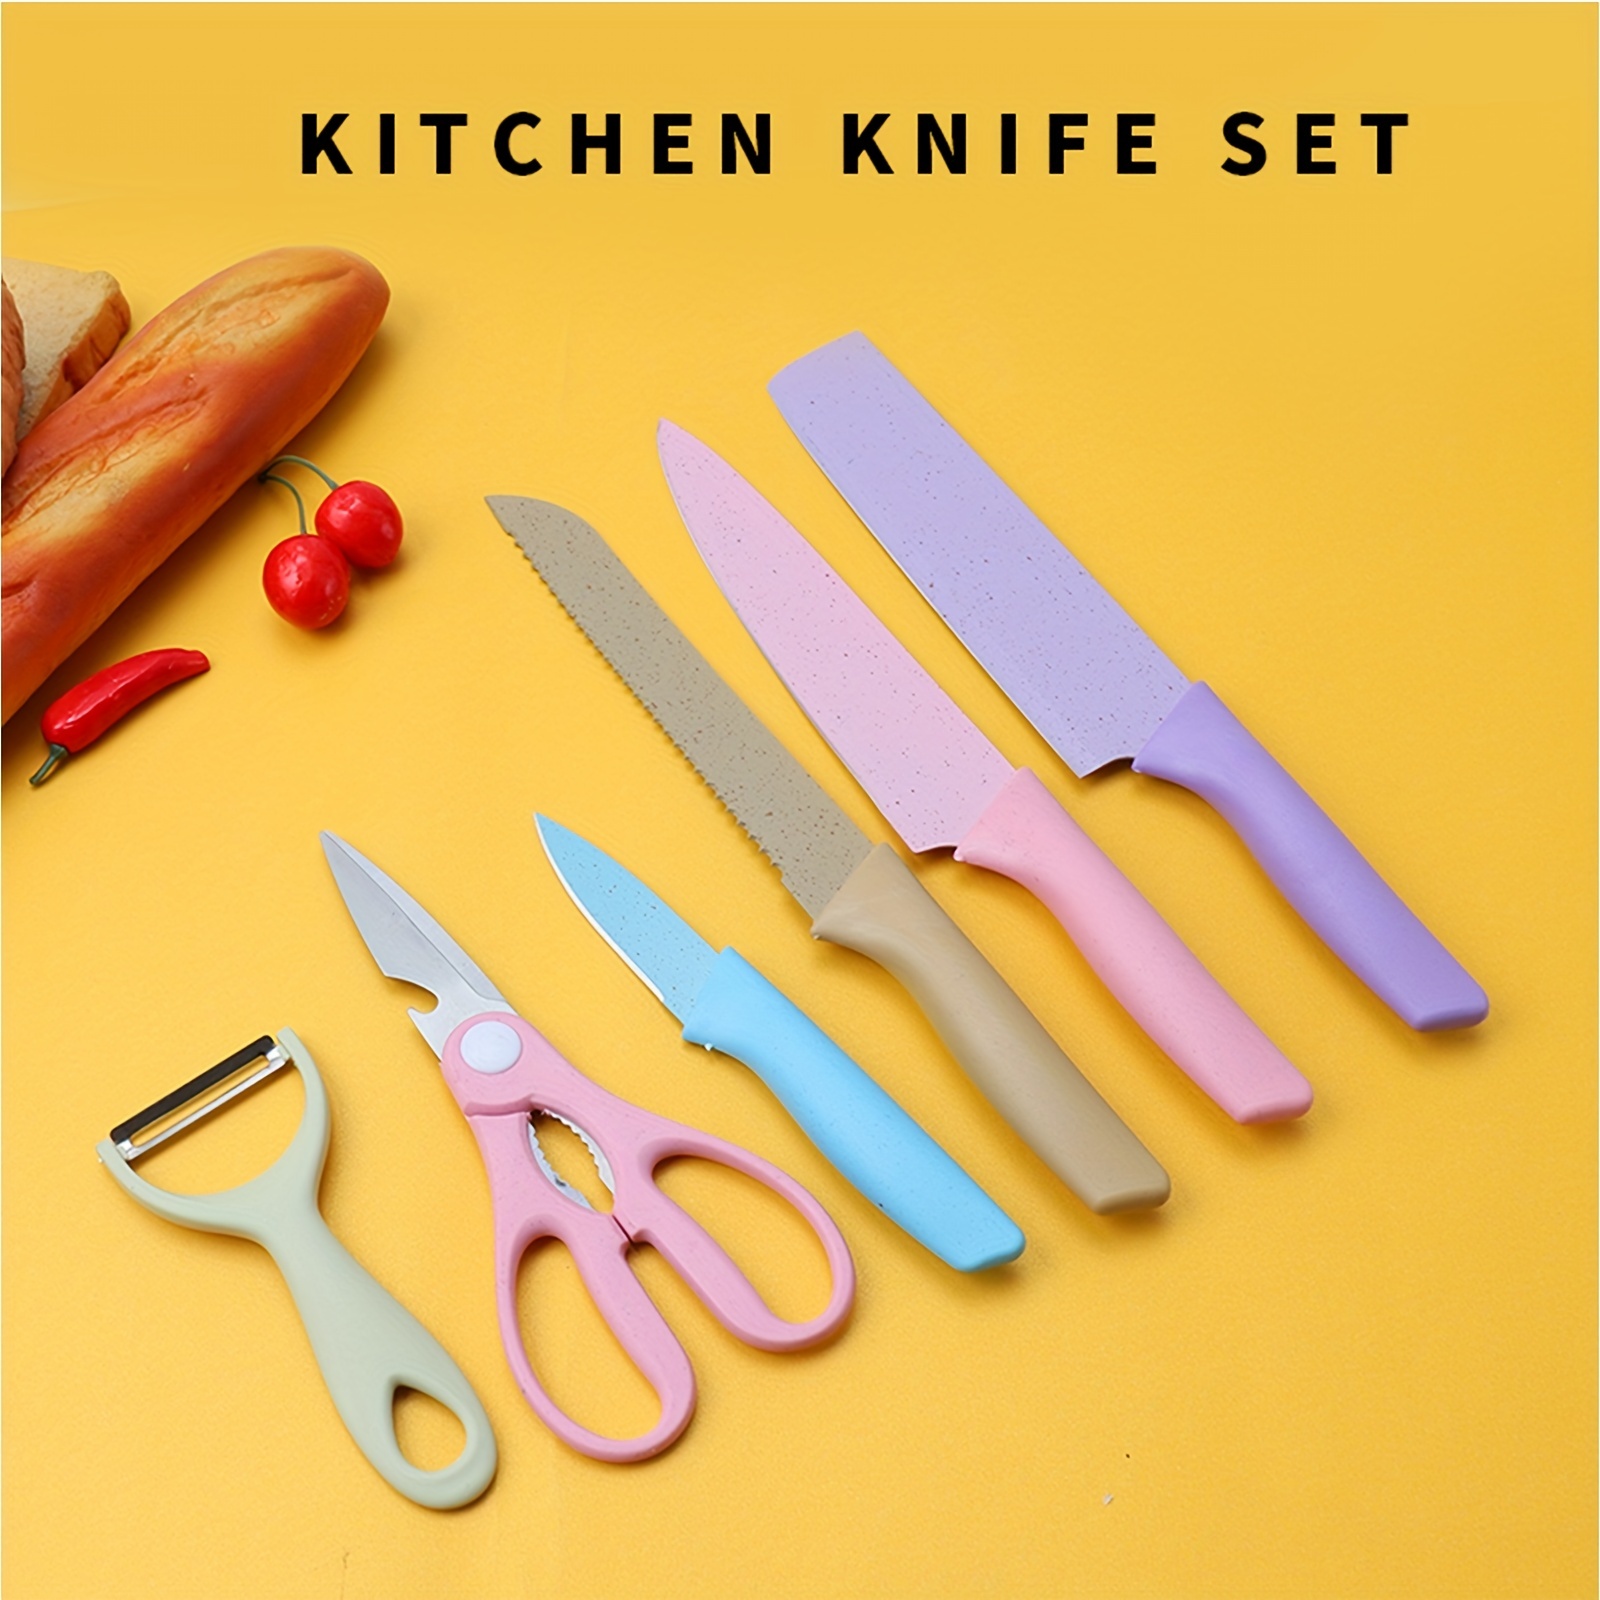 Juego de 6 cuchillos de cocina coloridos con revestimiento antiadherente,  juego de cuchillos de chef en caja para cocinar, acampar, viajes, picnic